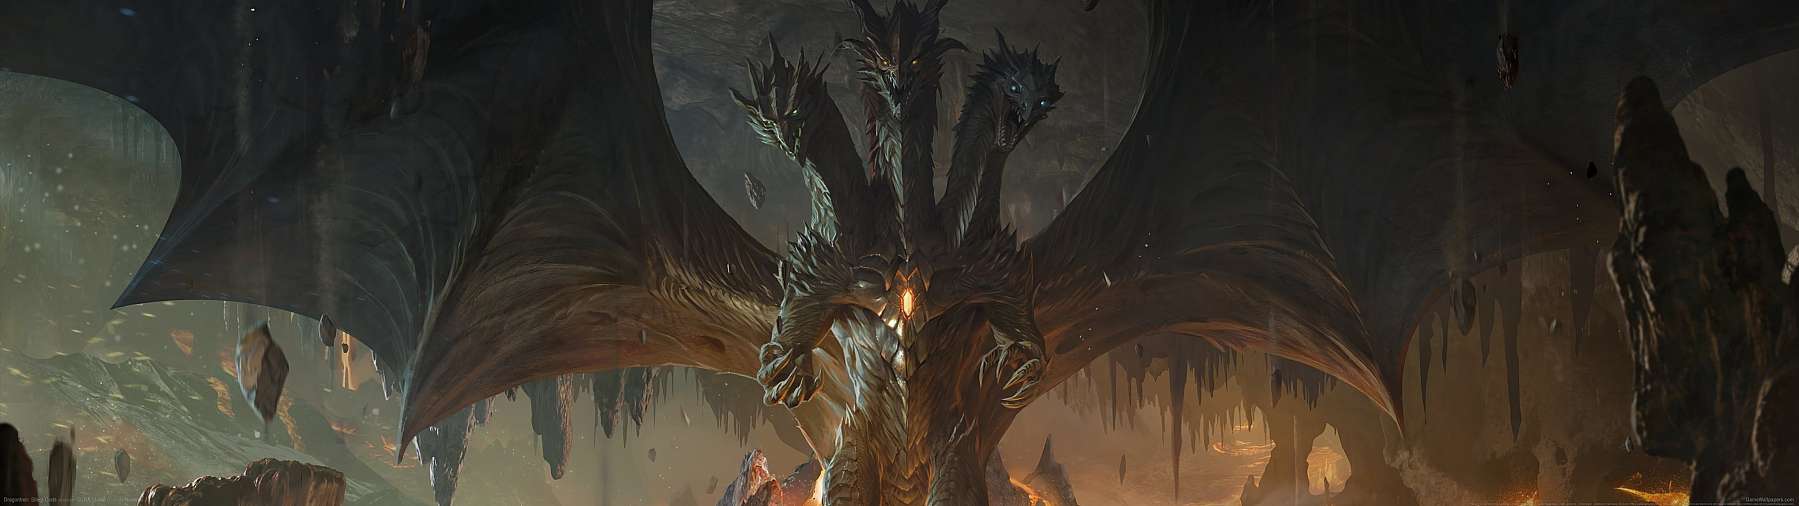 Dragonheir: Silent Gods fond d'cran